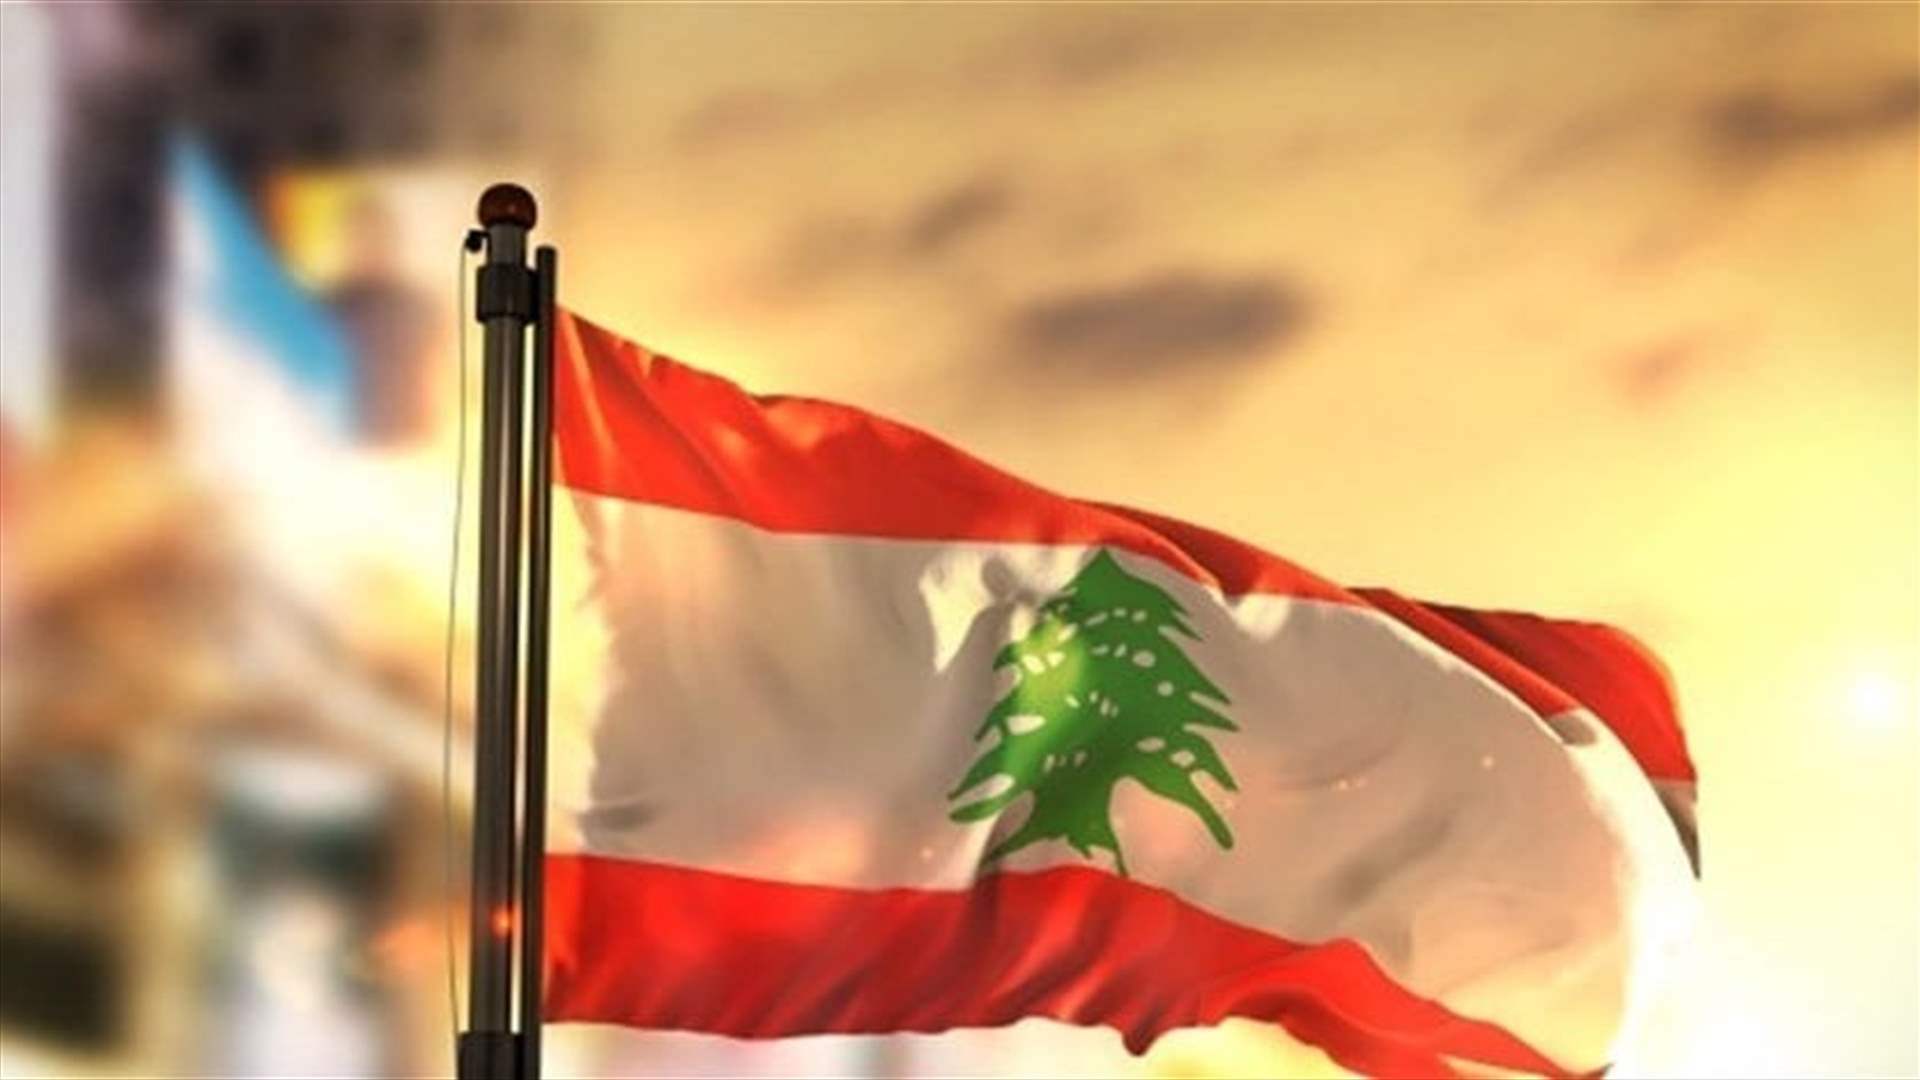 مطلعون على الأجواء الدولية لـ&quot;الجمهورية&quot;: أي قرار دولي بِحَسم الملف اللبناني واخراج لبنان من مأزقه لم يُتخَذ بعد